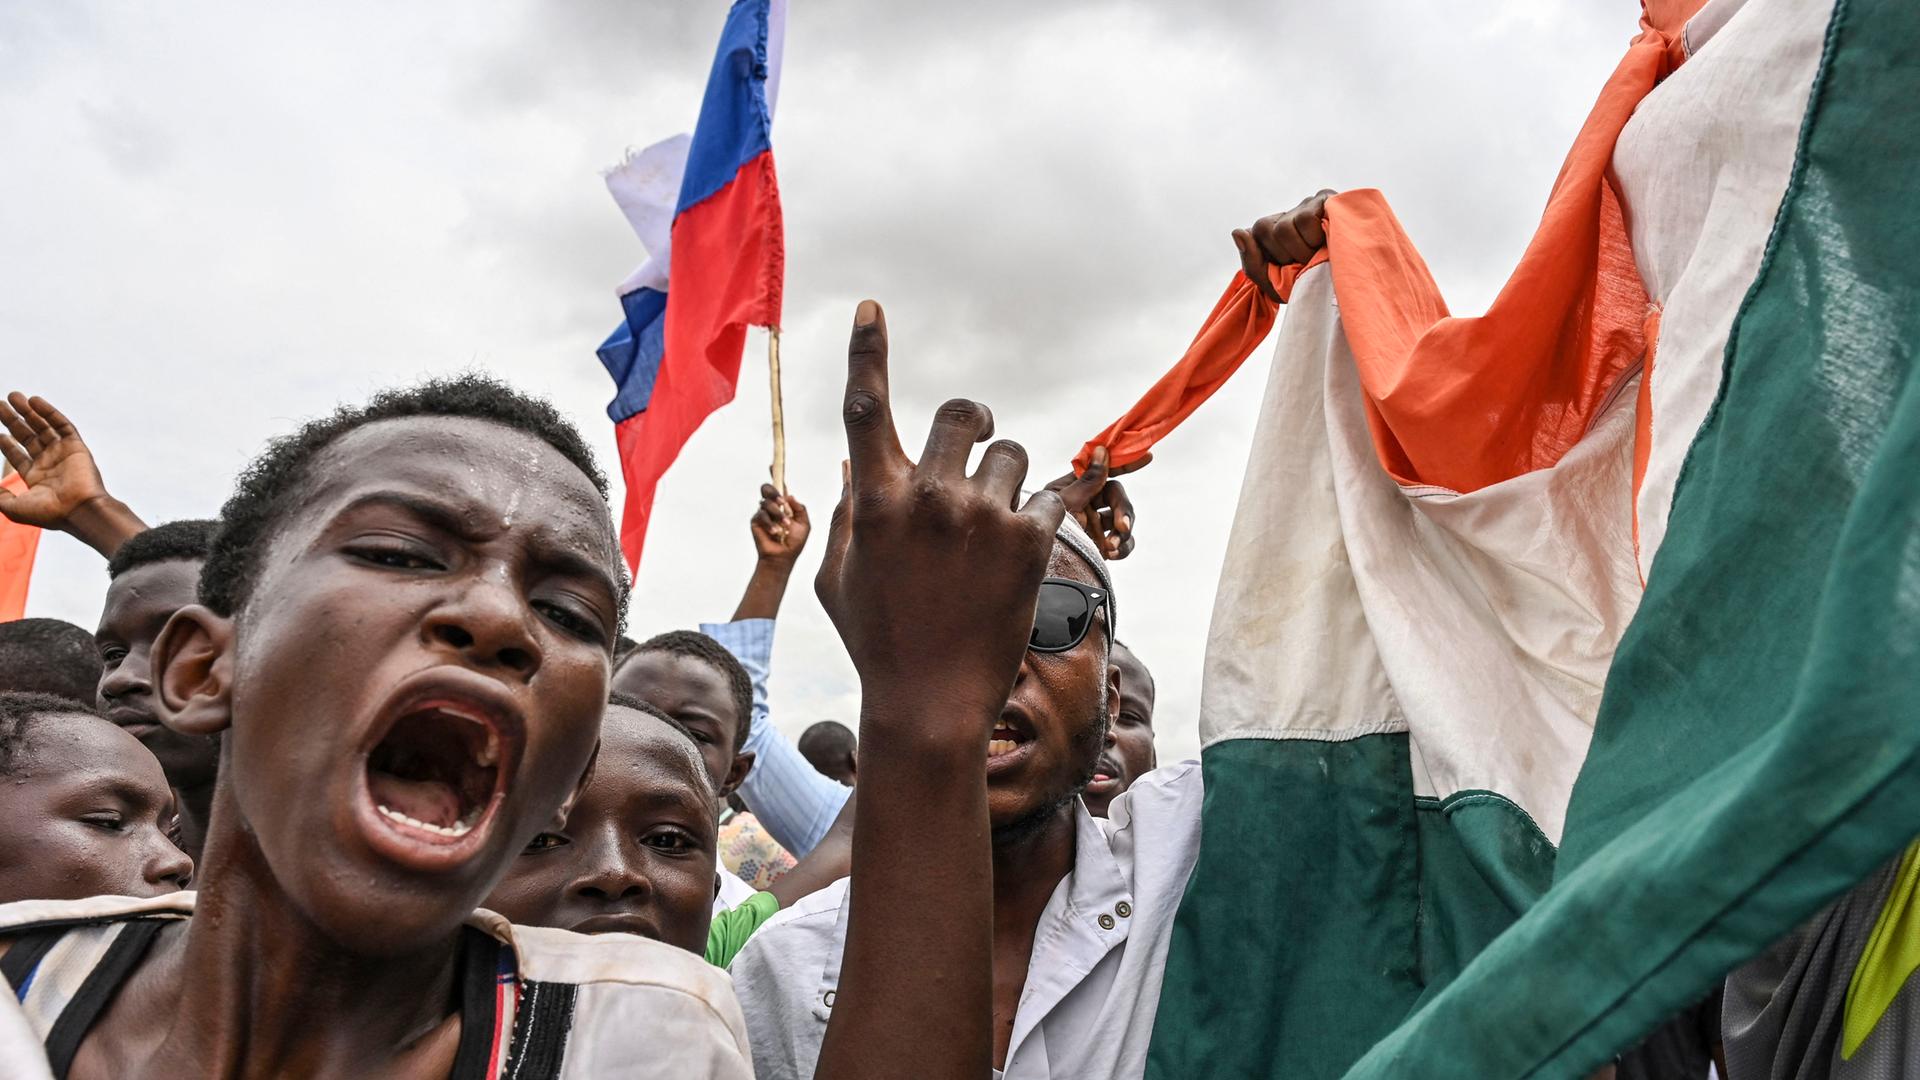 Mehrere Männer bei einer Demonstration. Sie rufen laut und schwenken nigrische Flaggen.